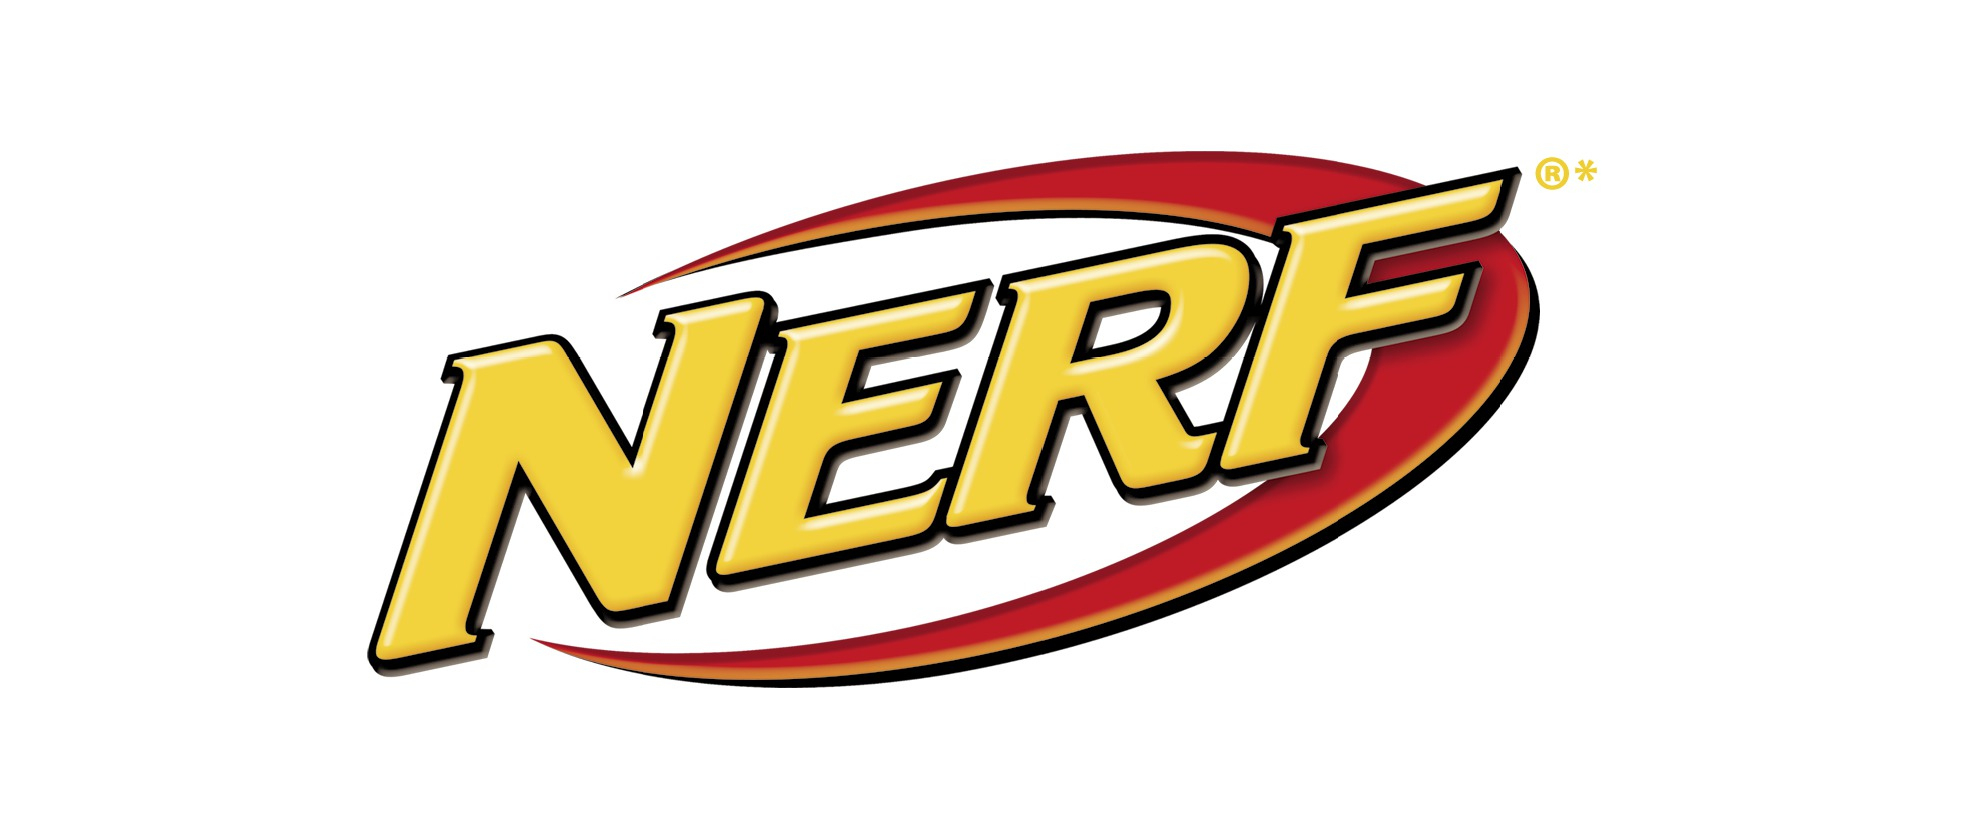 Free Printable Nerf Logos - Free Printable Nerf Logo